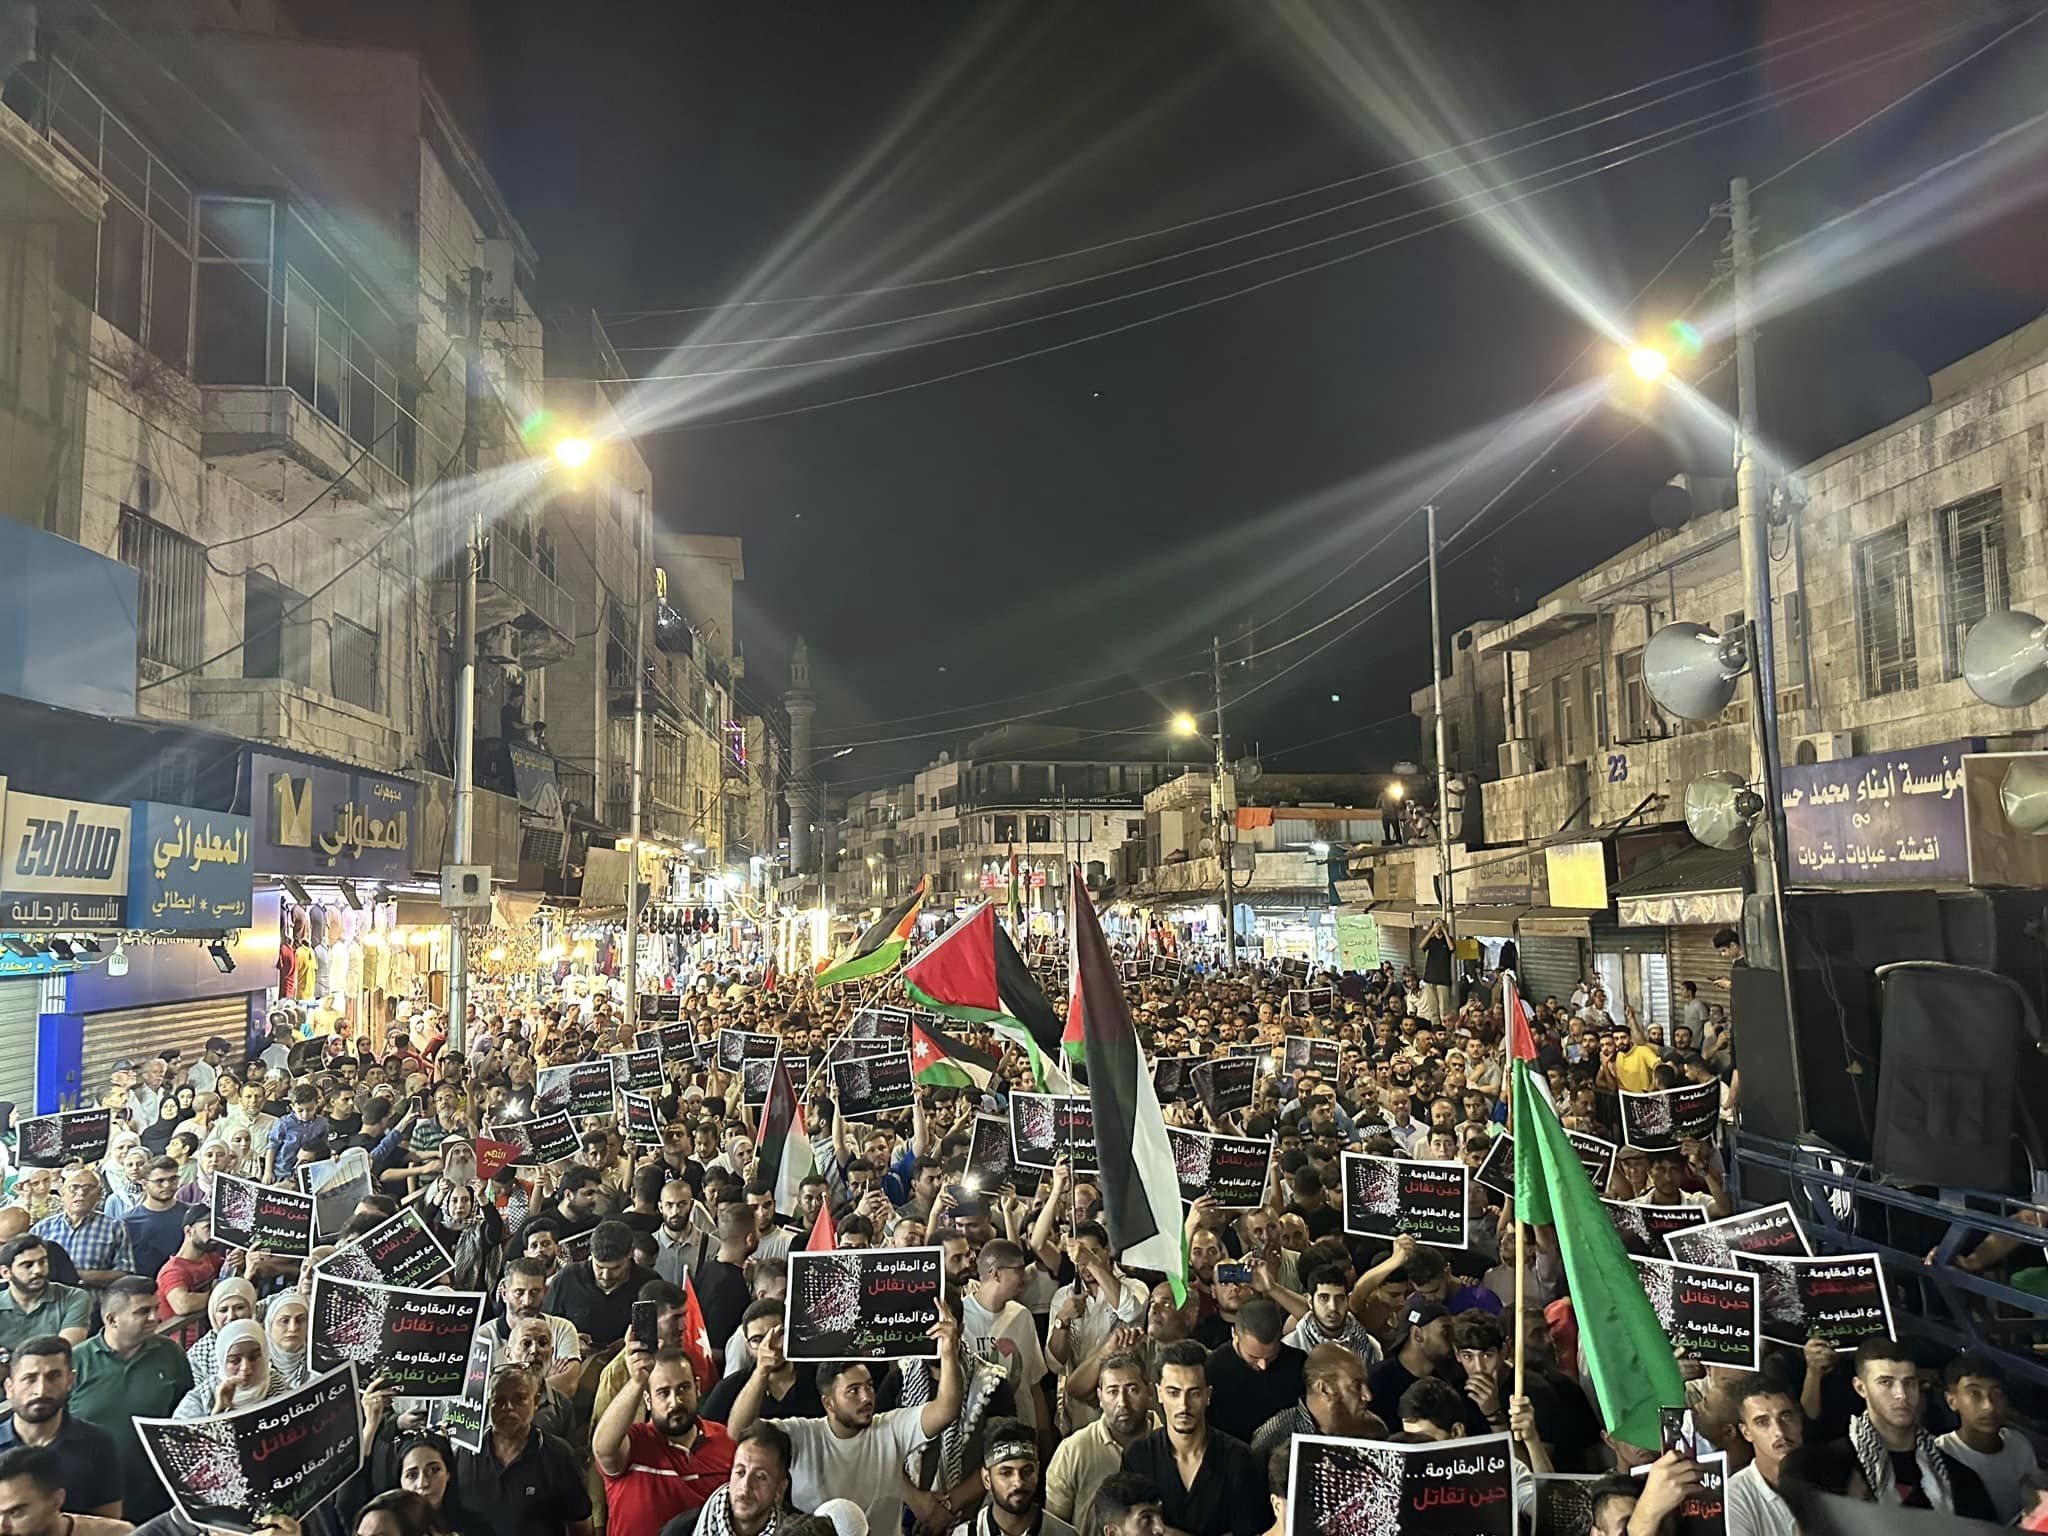  آلاف الاردنيين في مسيرة ليلية بوسط البلد: اسمع يا محتل اسمع.. جنودك عنا ورح تخضع - فيديو وصور